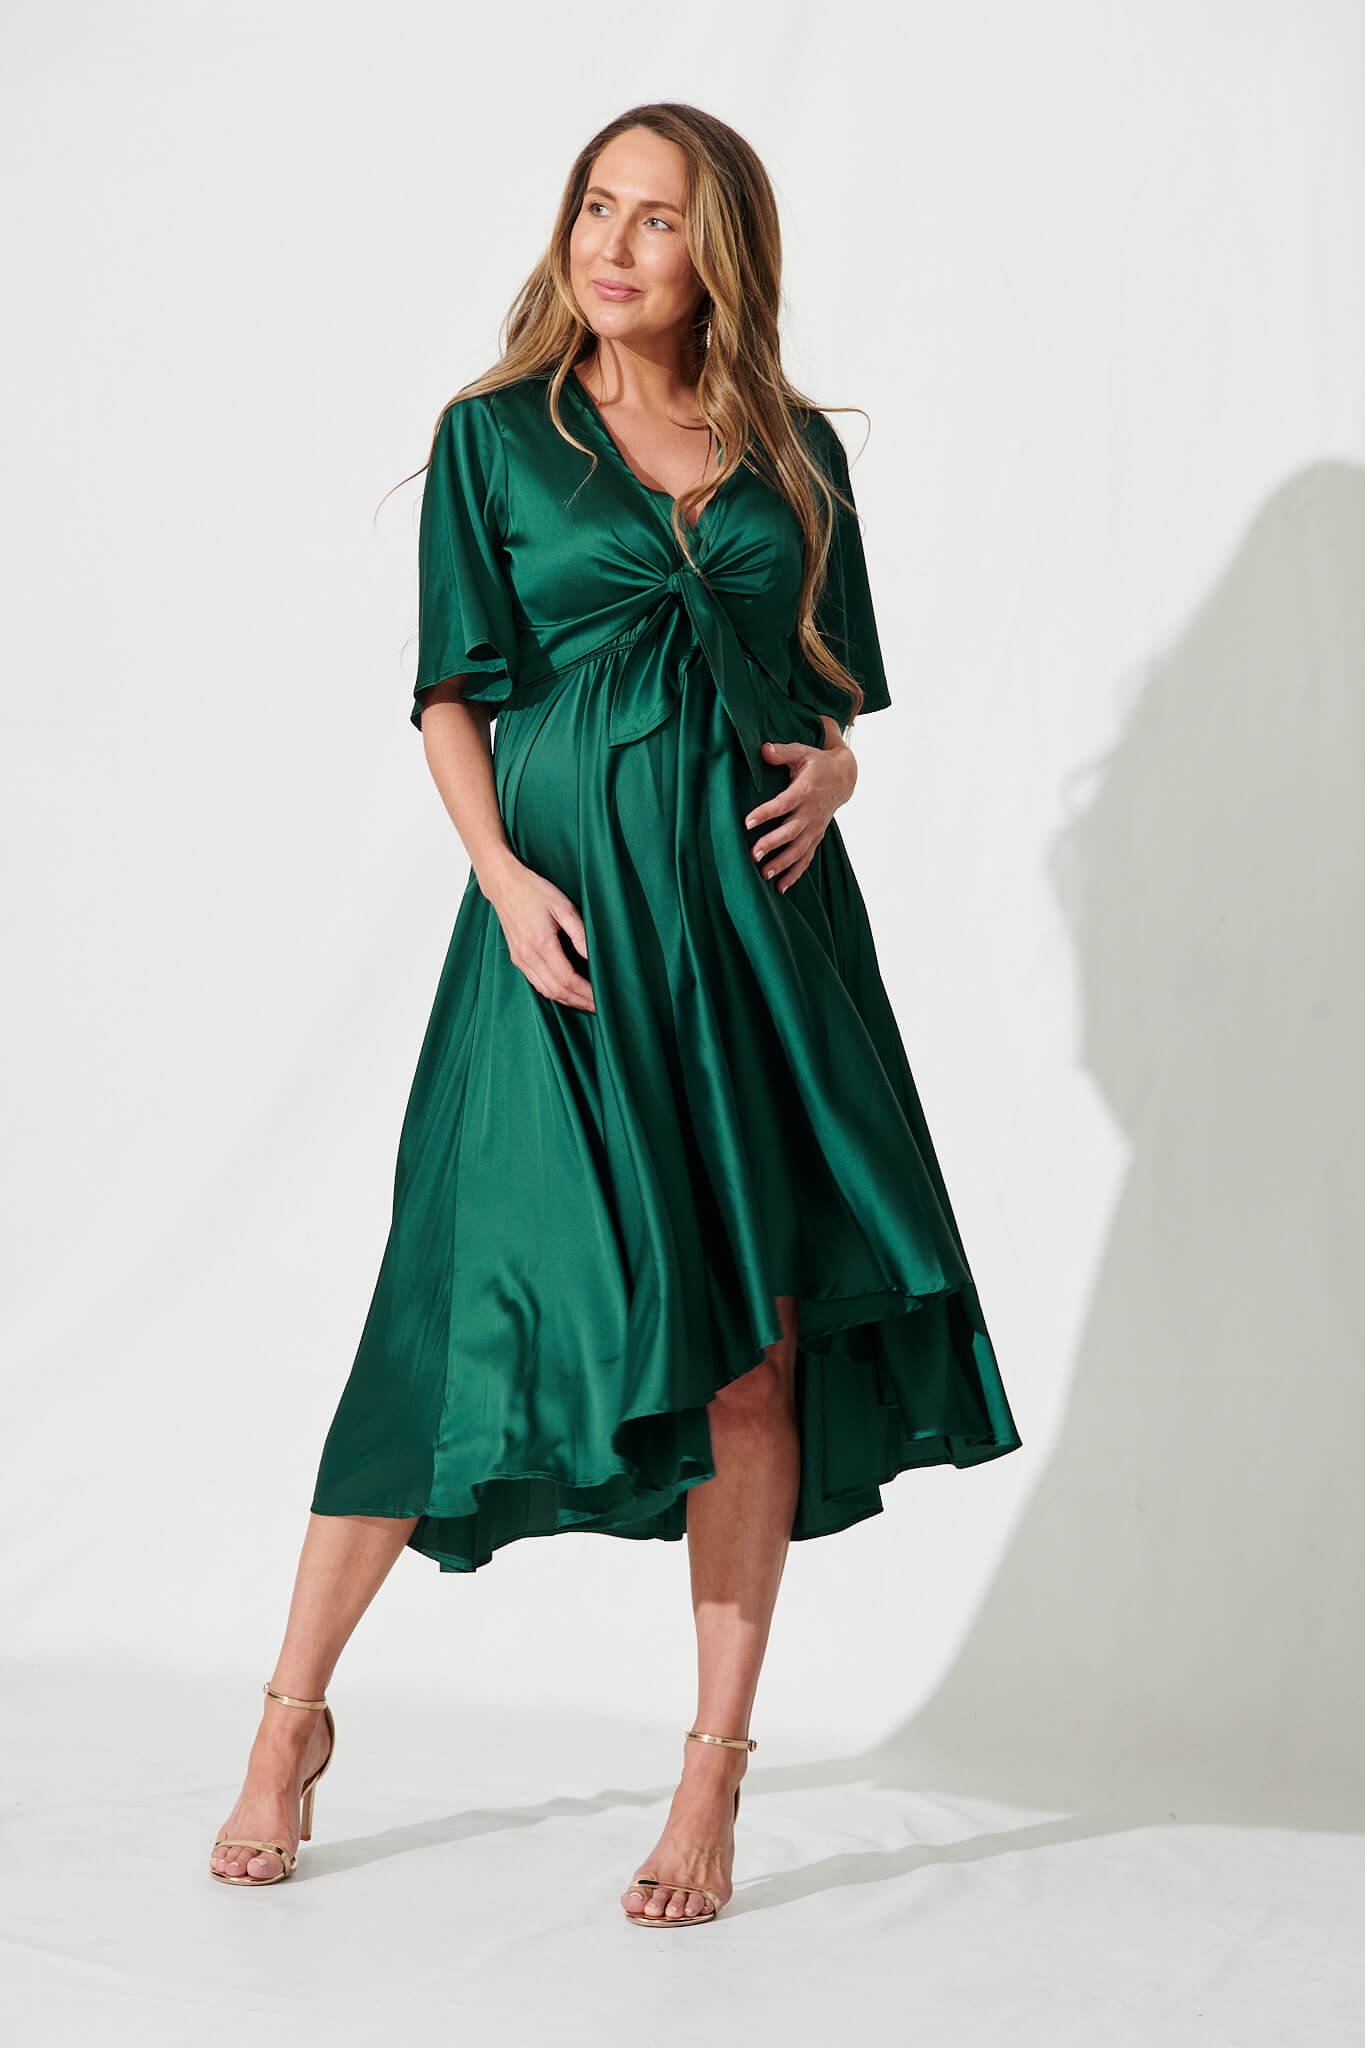 Stockholm Dress In Emerald Green Satin - full length